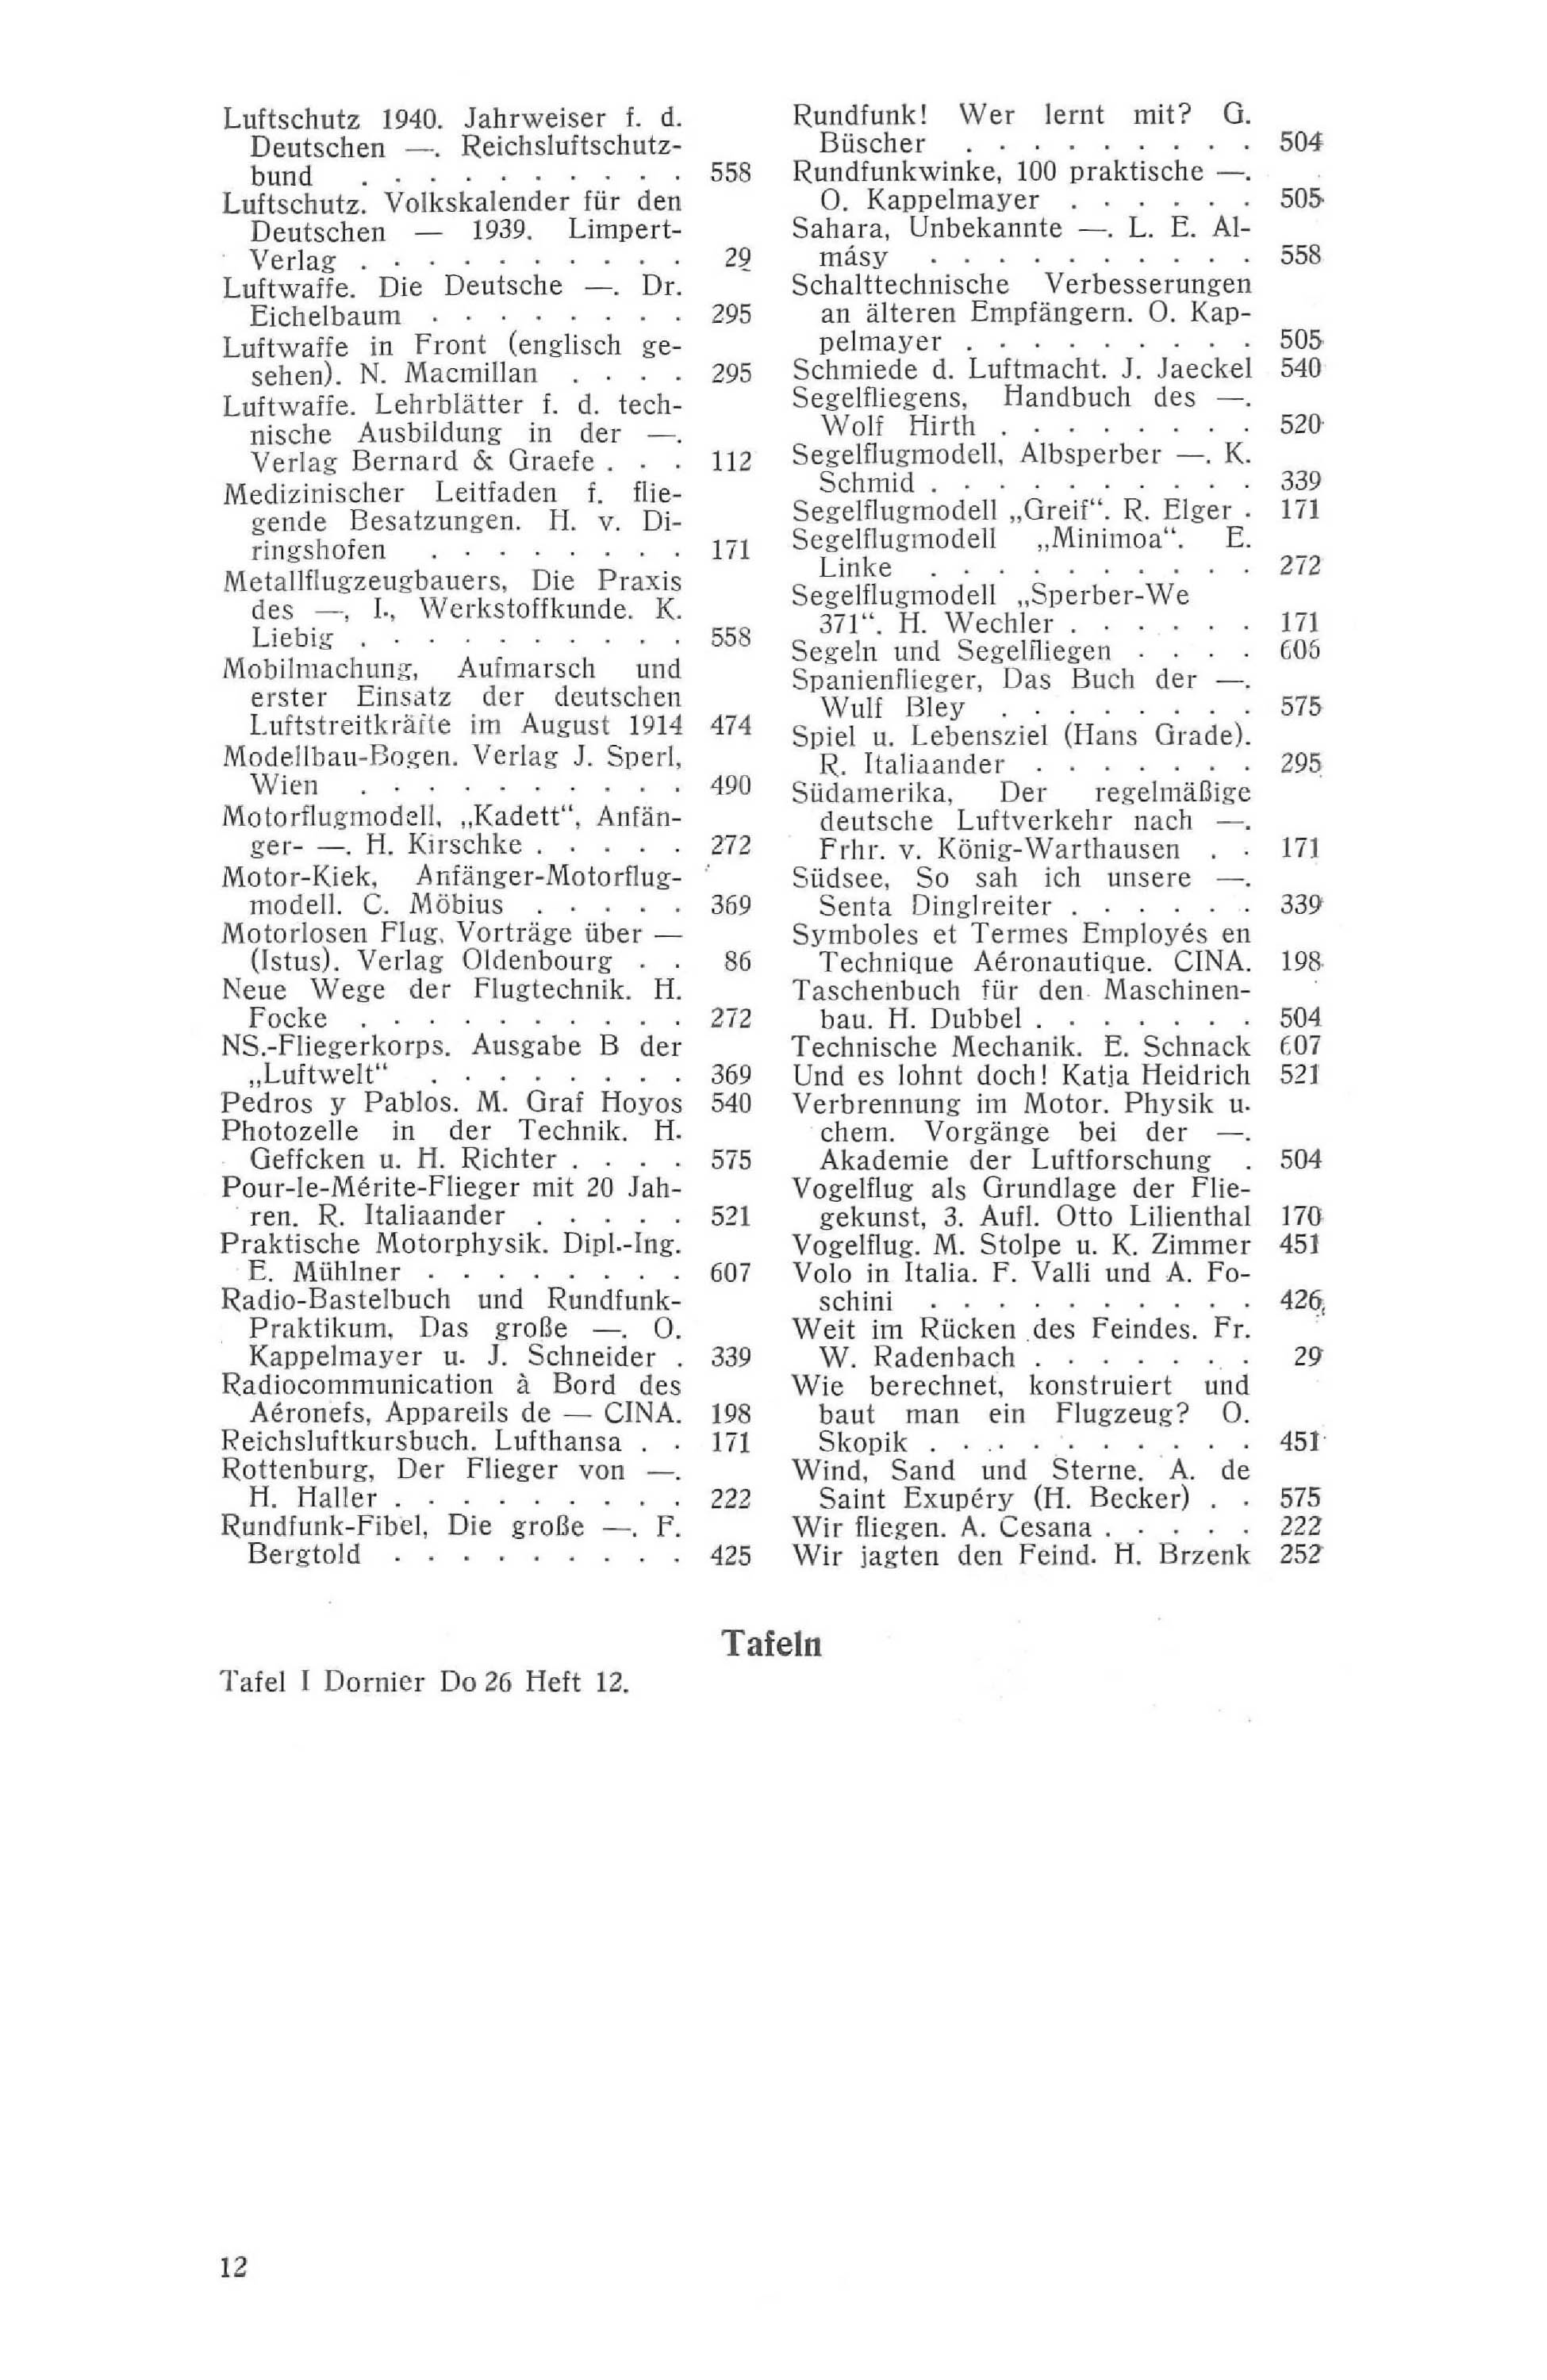 Sachregister und Inhaltsverzeichnis der Zeitschrift Flugsport 1939